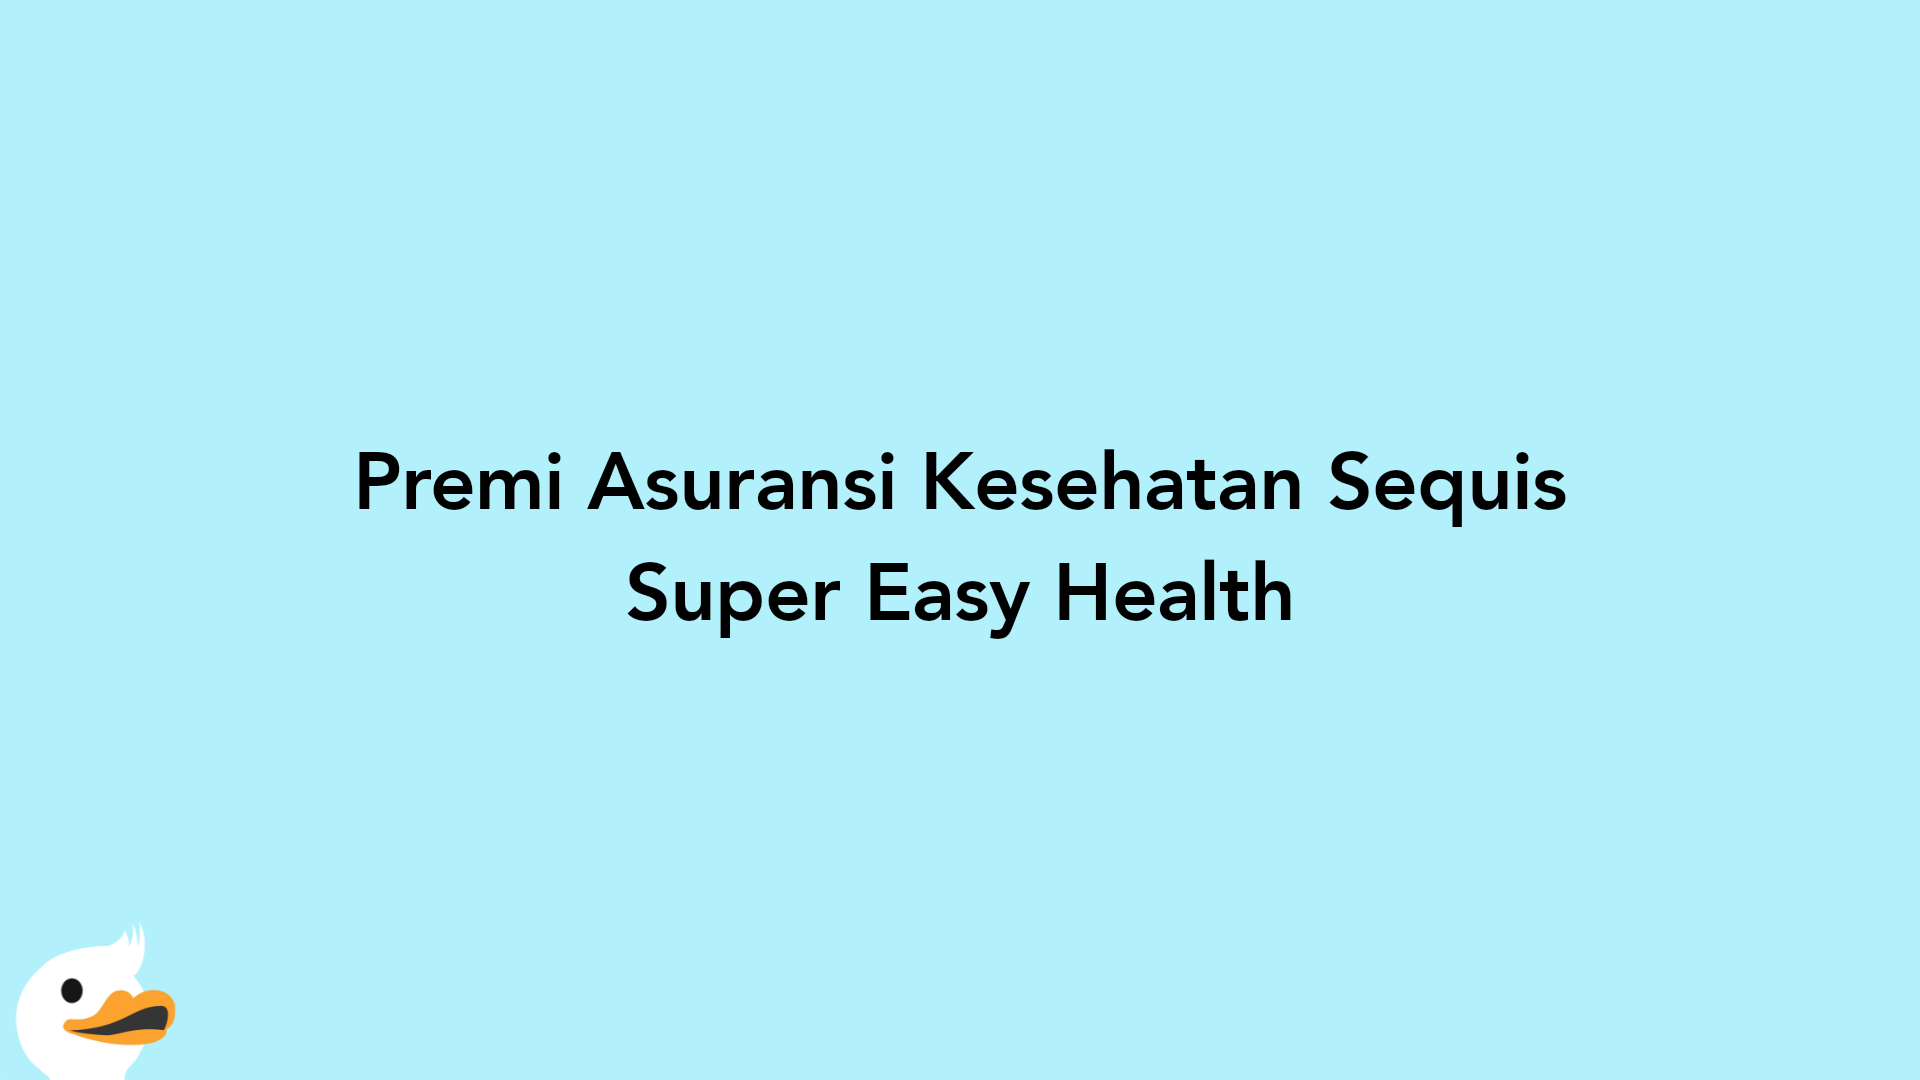 Premi Asuransi Kesehatan Sequis Super Easy Health